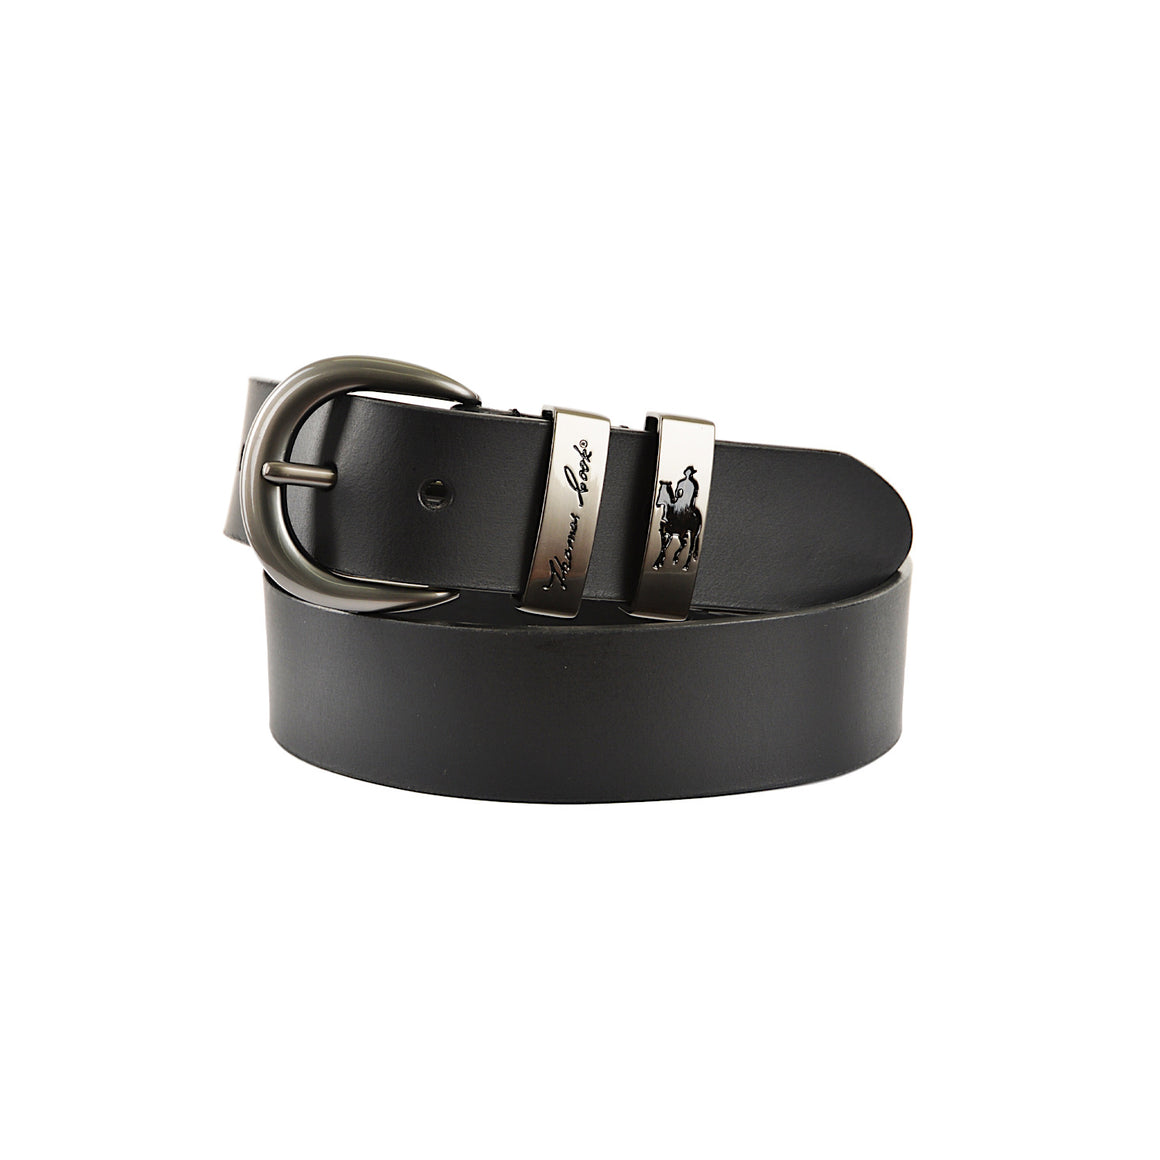 Buy Thomas Cook Harry Leather Braided Belt (TCP1910BEL) Dark Brown